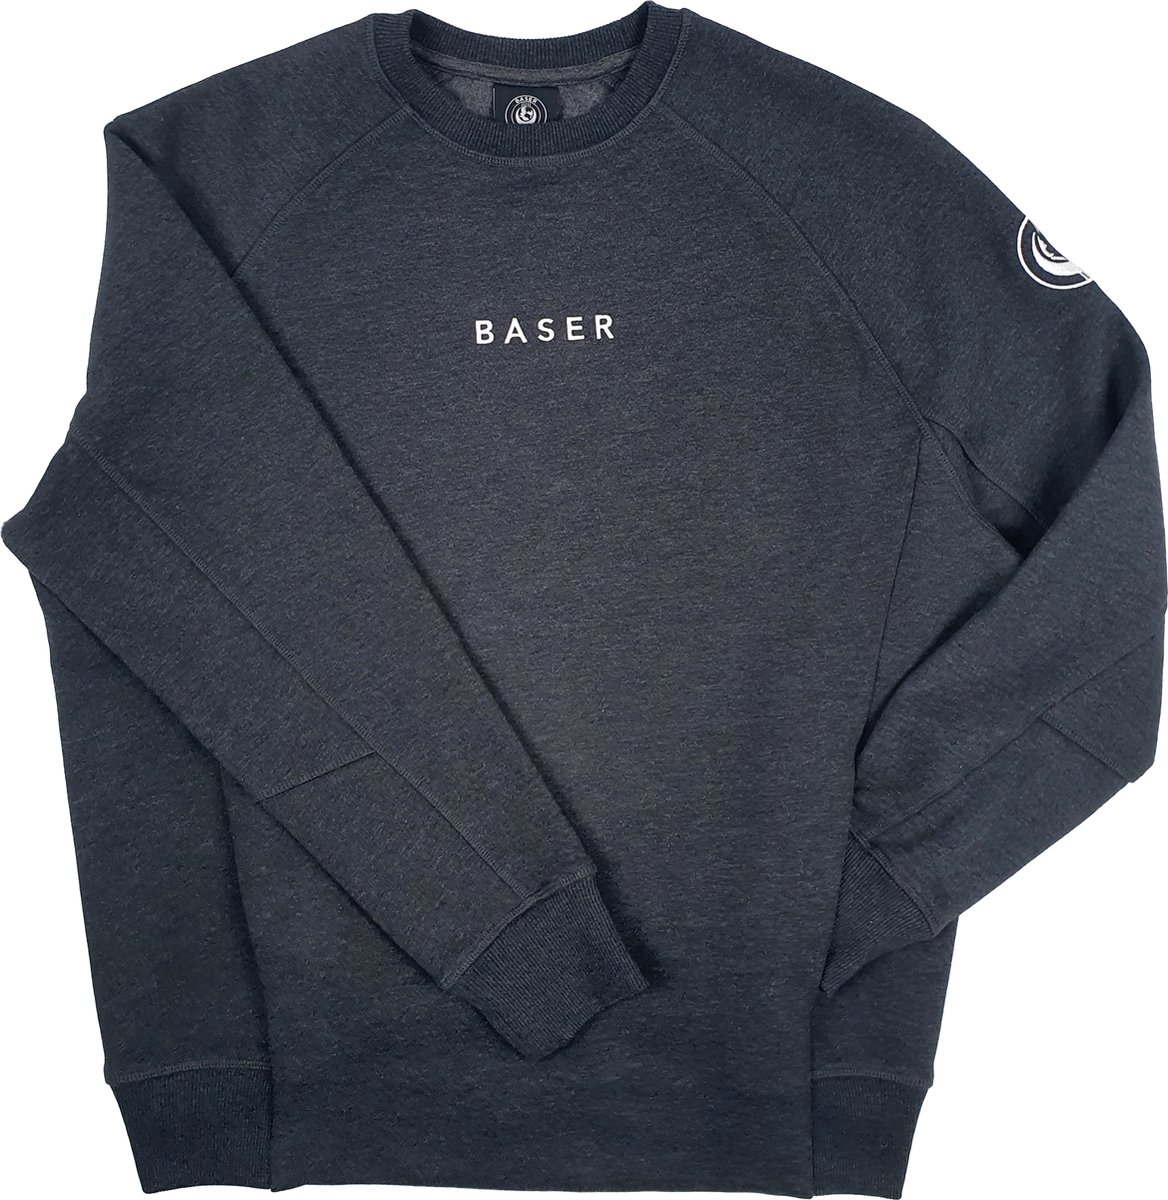 BASER Statement Sweater Grijs Melange Fleece - Maat M